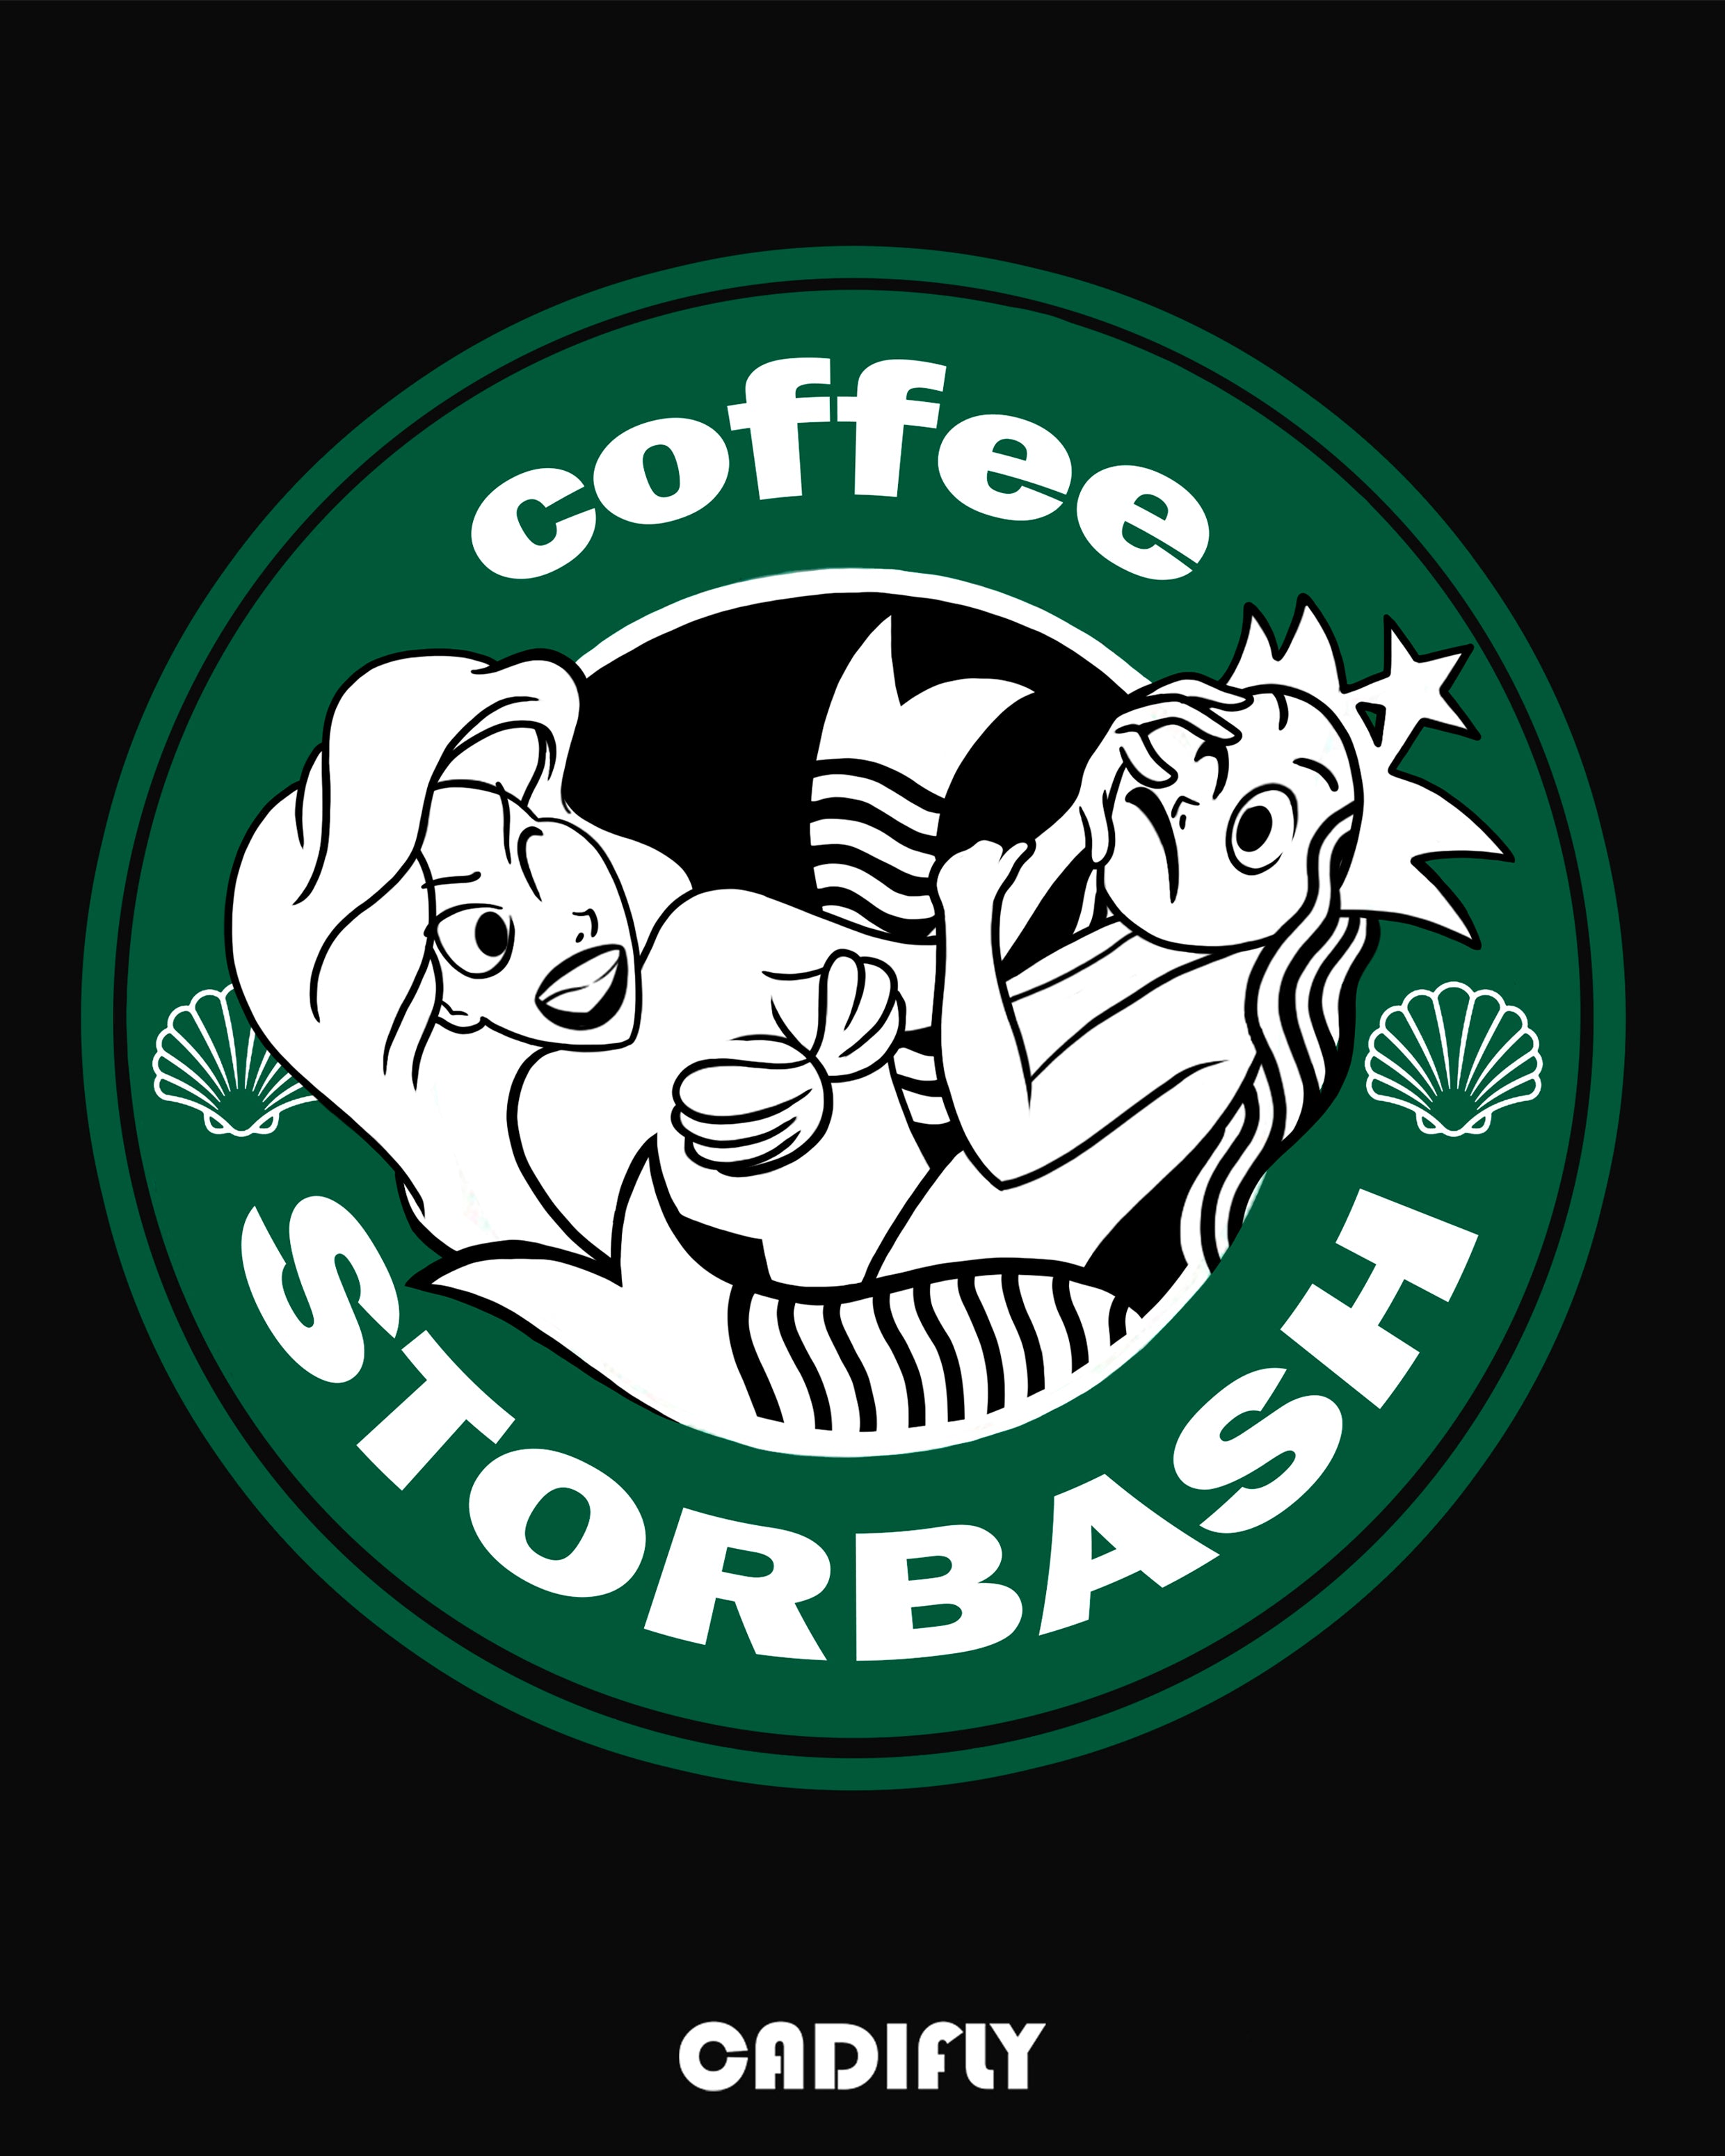 Diseño de logo de starbucks con la Sirenita